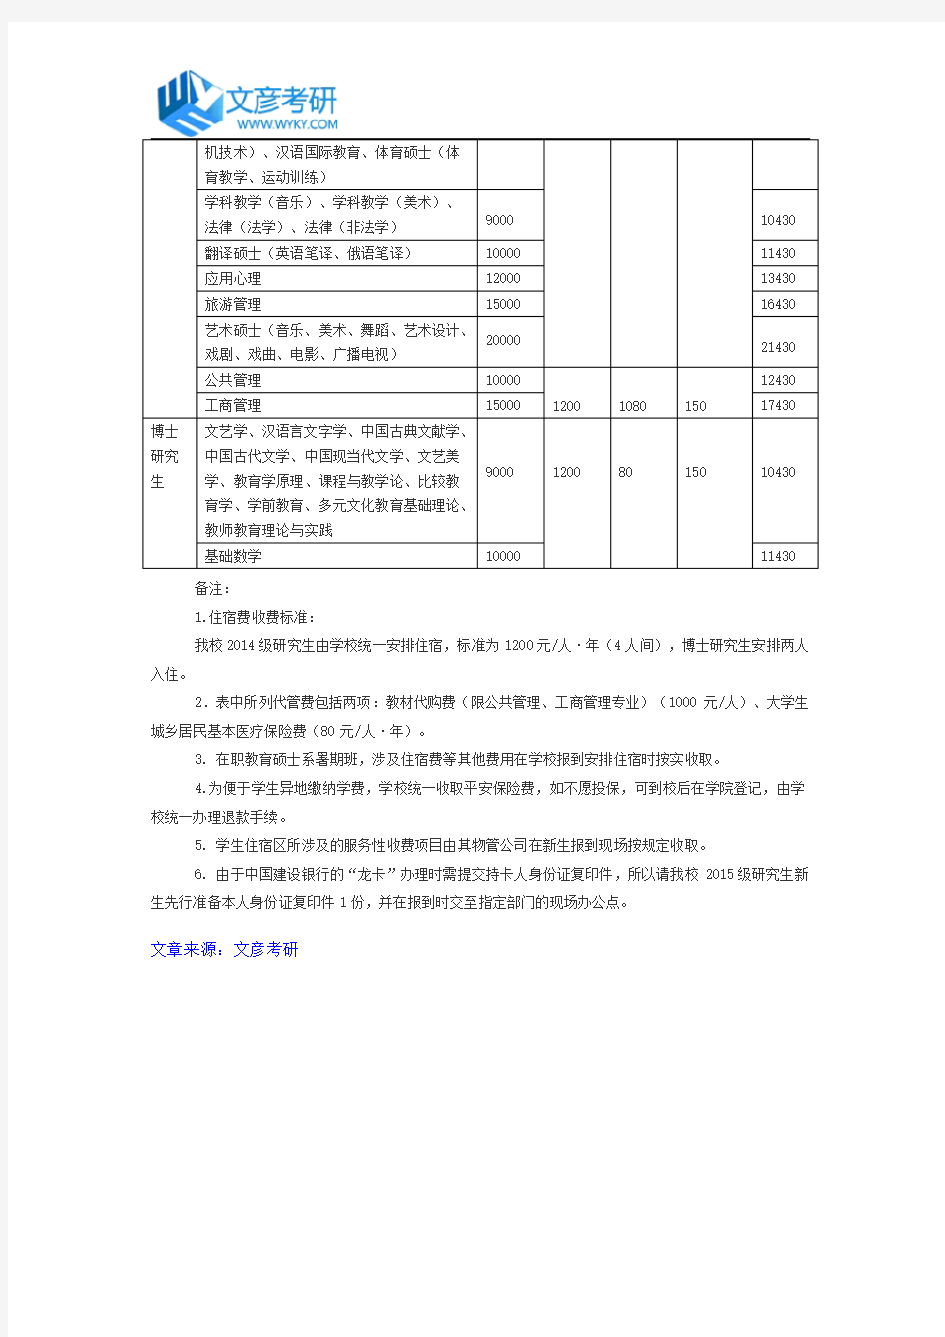 四川师范大学2015级研究生新生收费标准一览表_川师考研